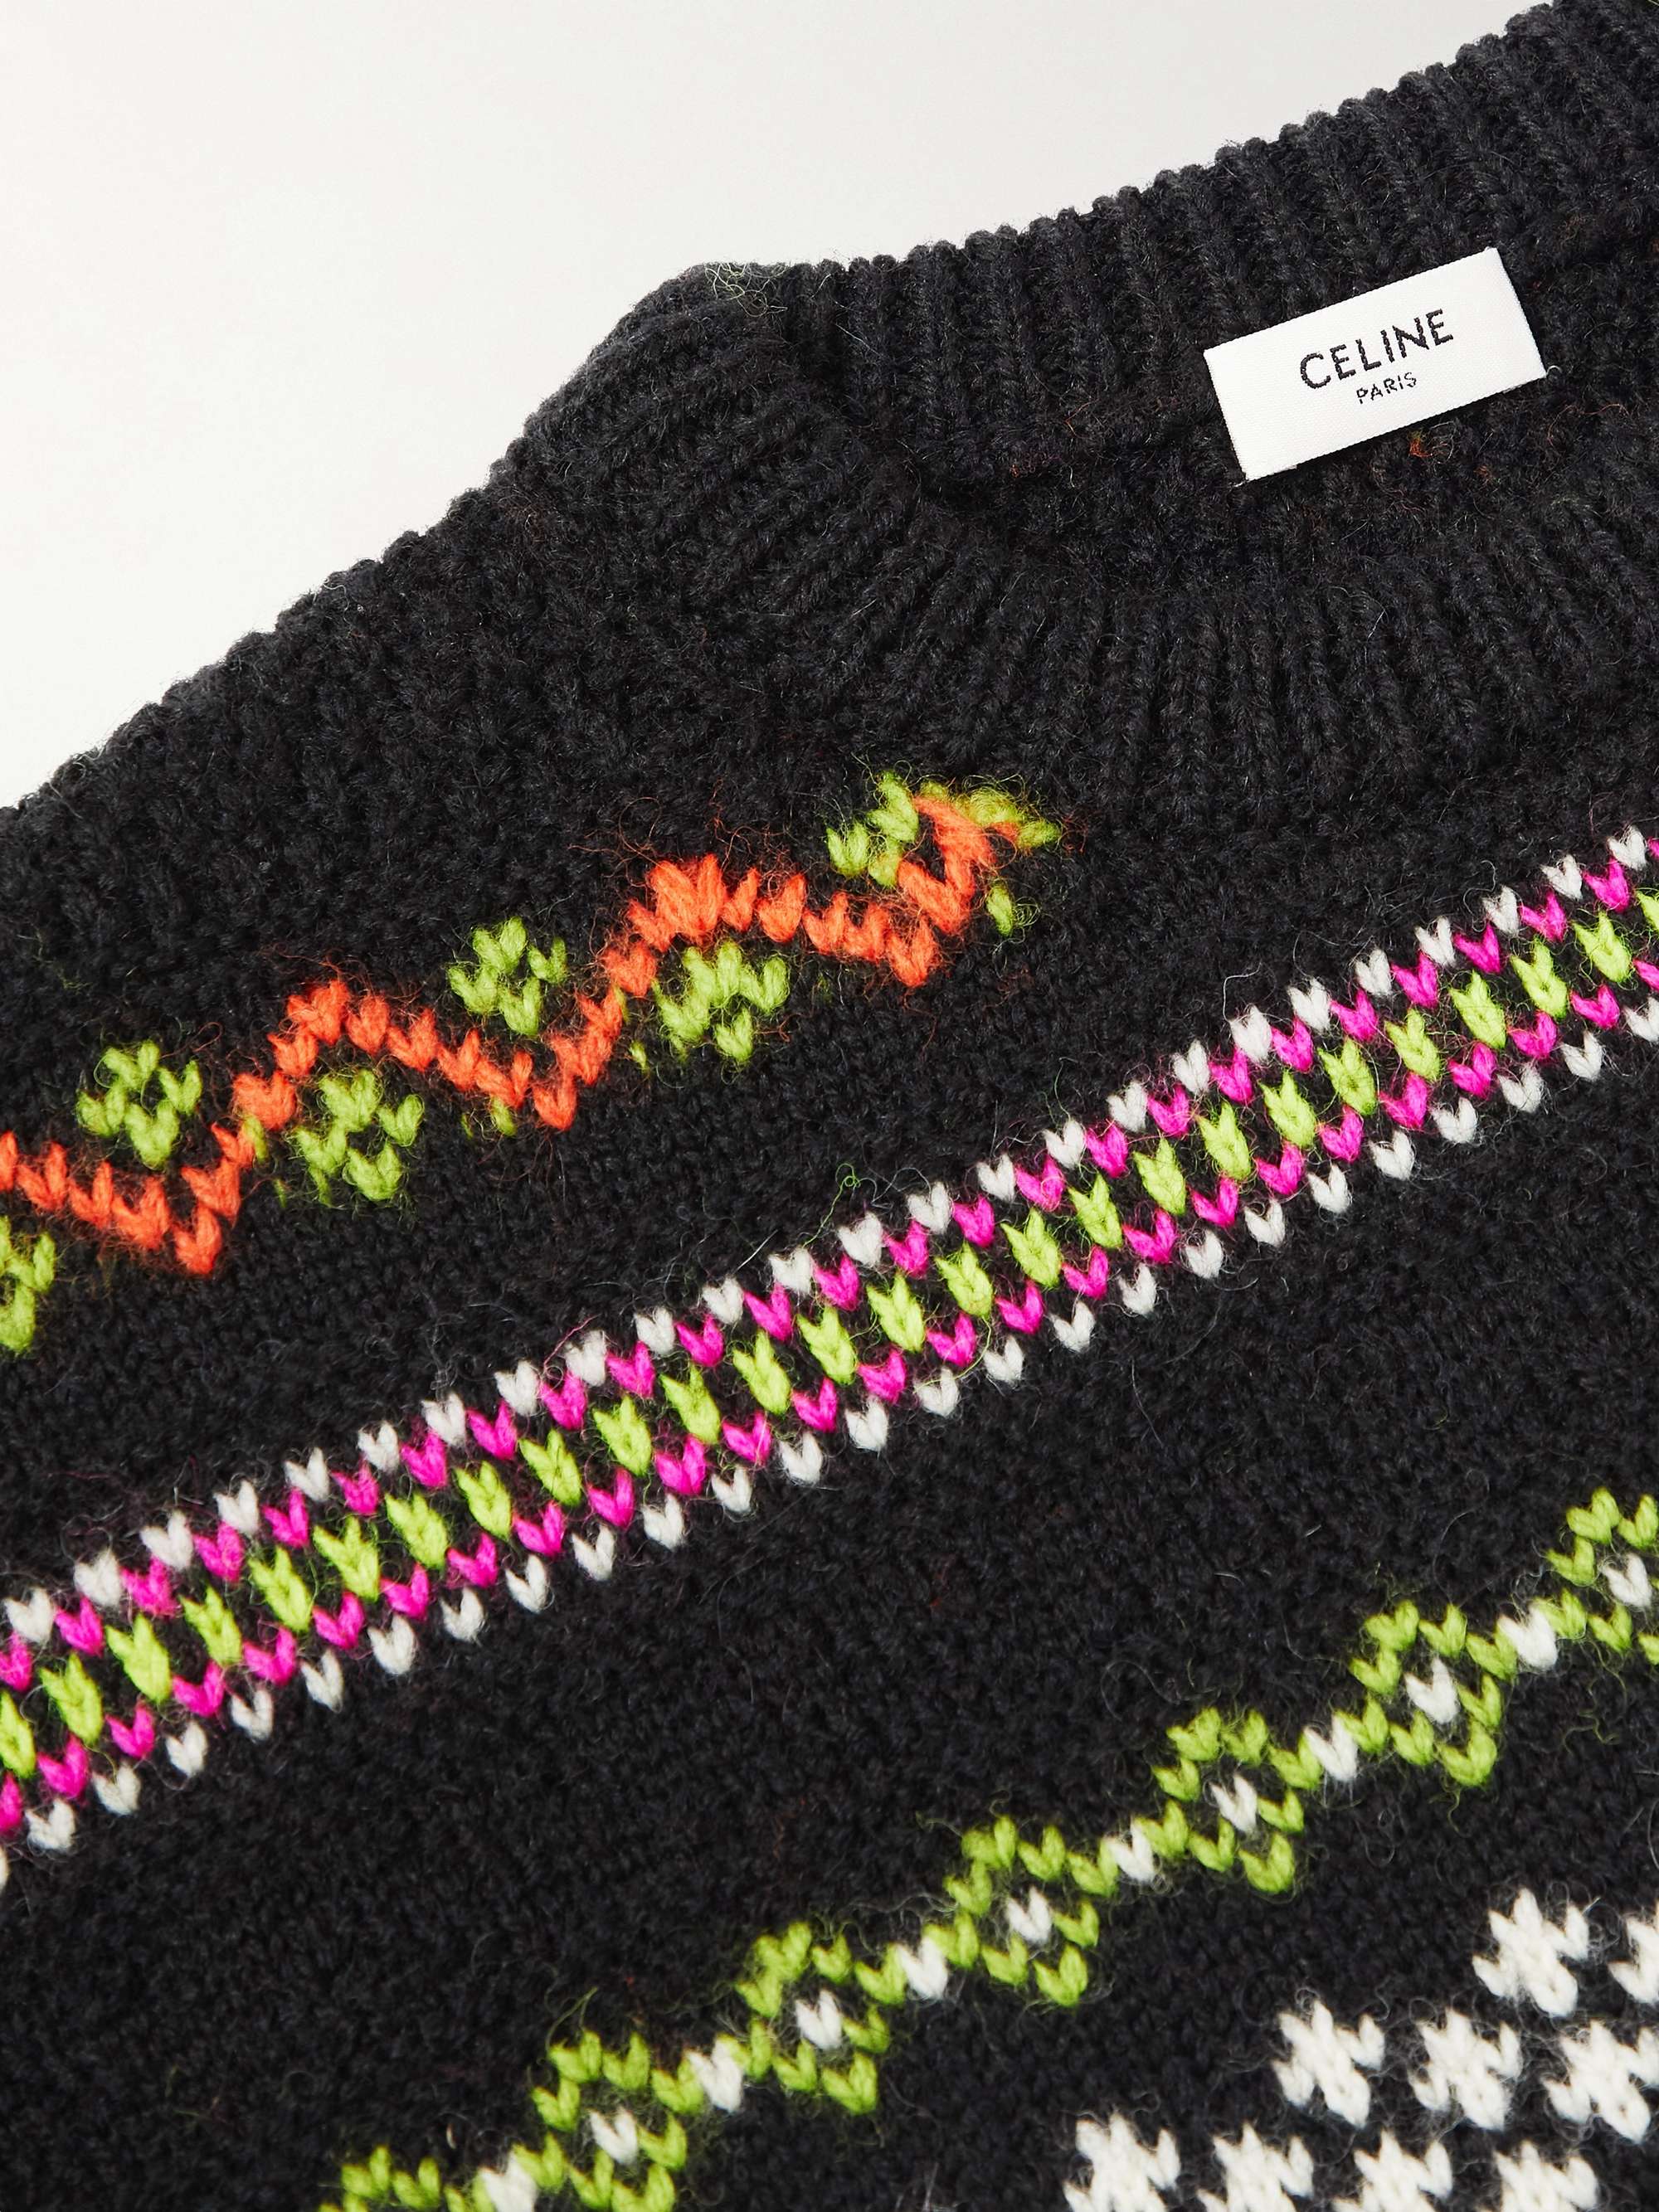 CELINE HOMME Studded Fair Isle Wool Sweater